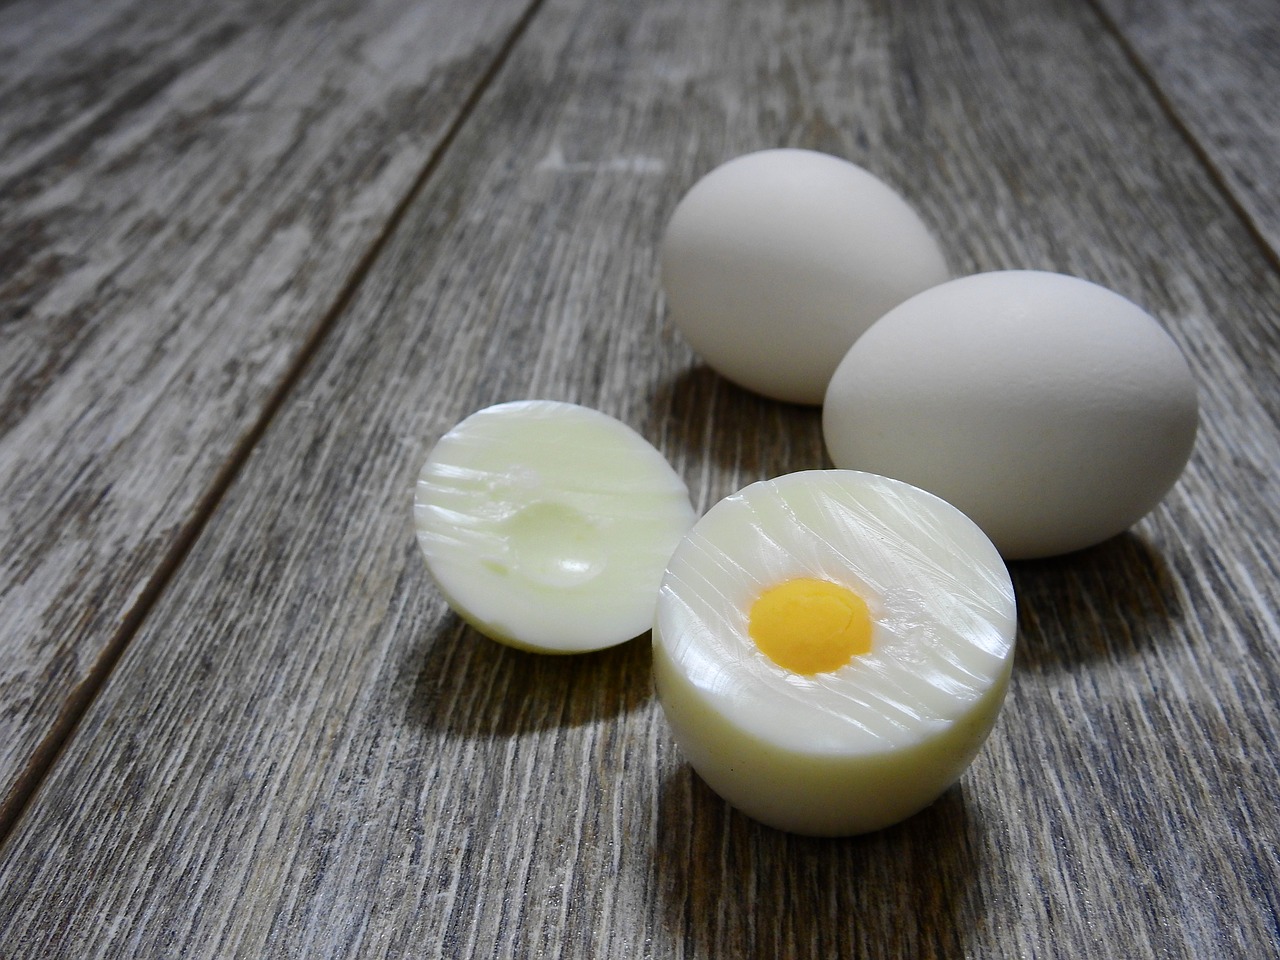 GRUPPEN skalar av sig: Bästa knepet för att skala ägg – de förblir helt intakta!